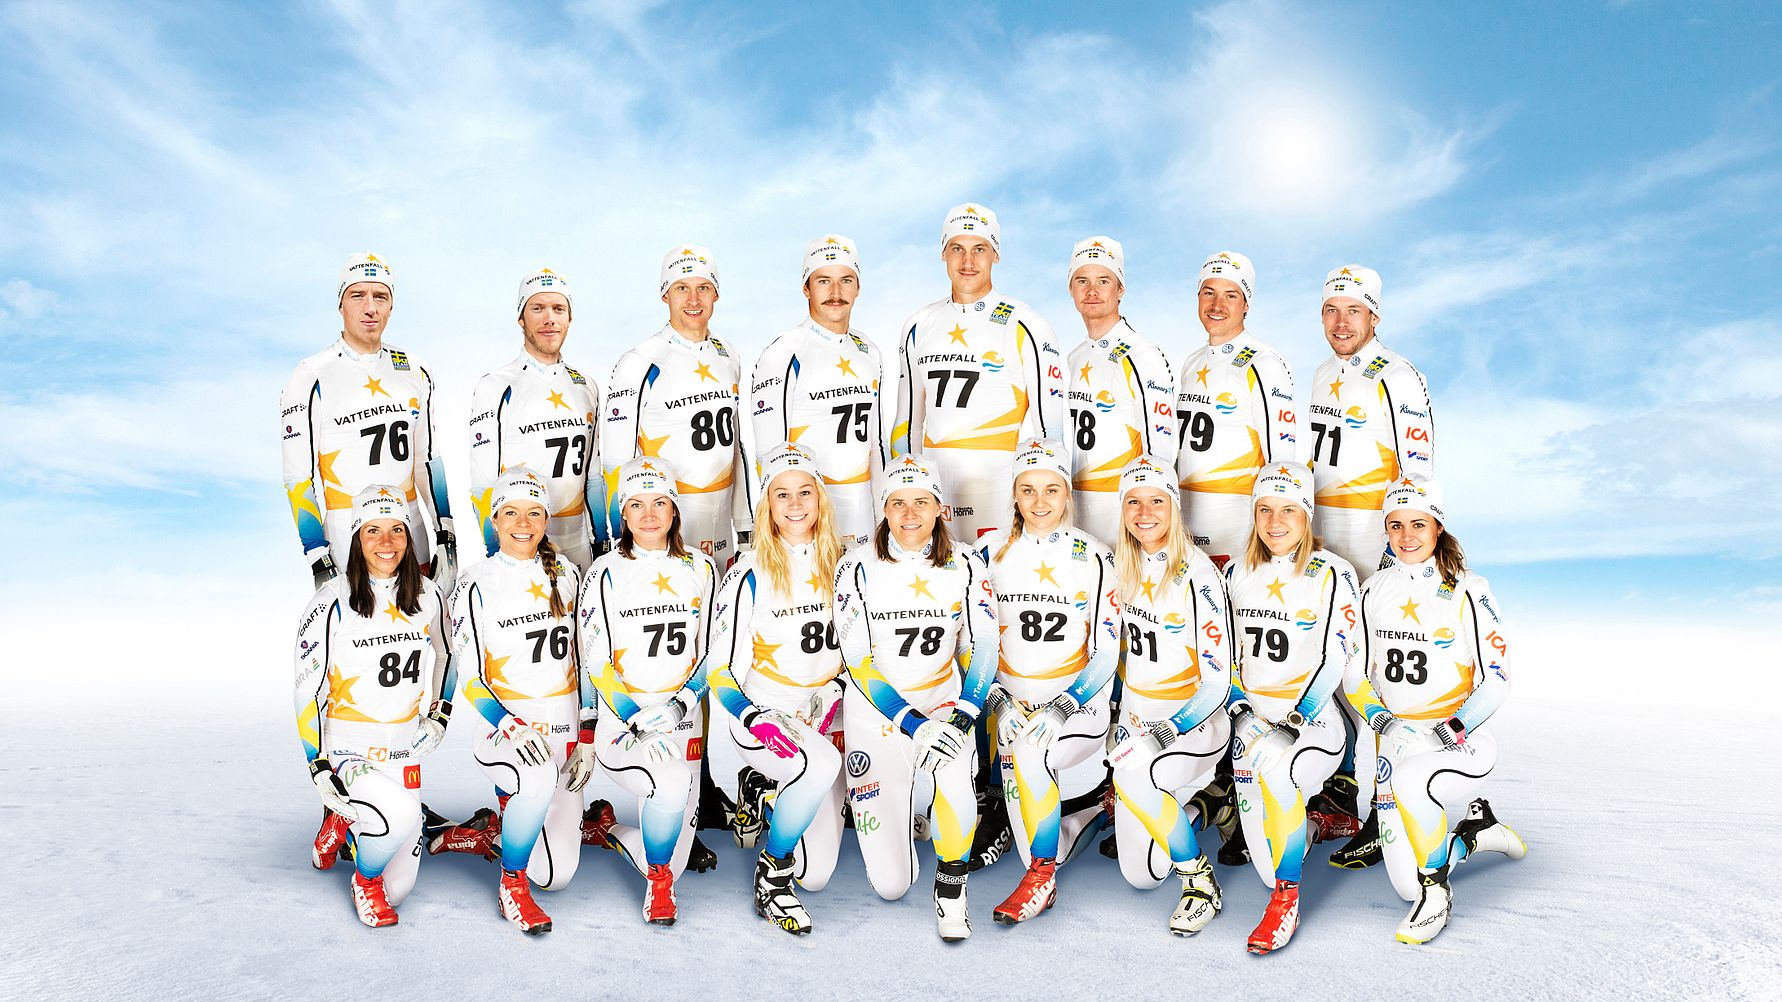 Сколько раз становилась чемпионом сборная команда швеции. Сборная Швеции по лыжным гонкам. Сборная Швеции по лыжным гонкам 2012. Norway Cross Country Team. Norway Ski Team Cross Country.